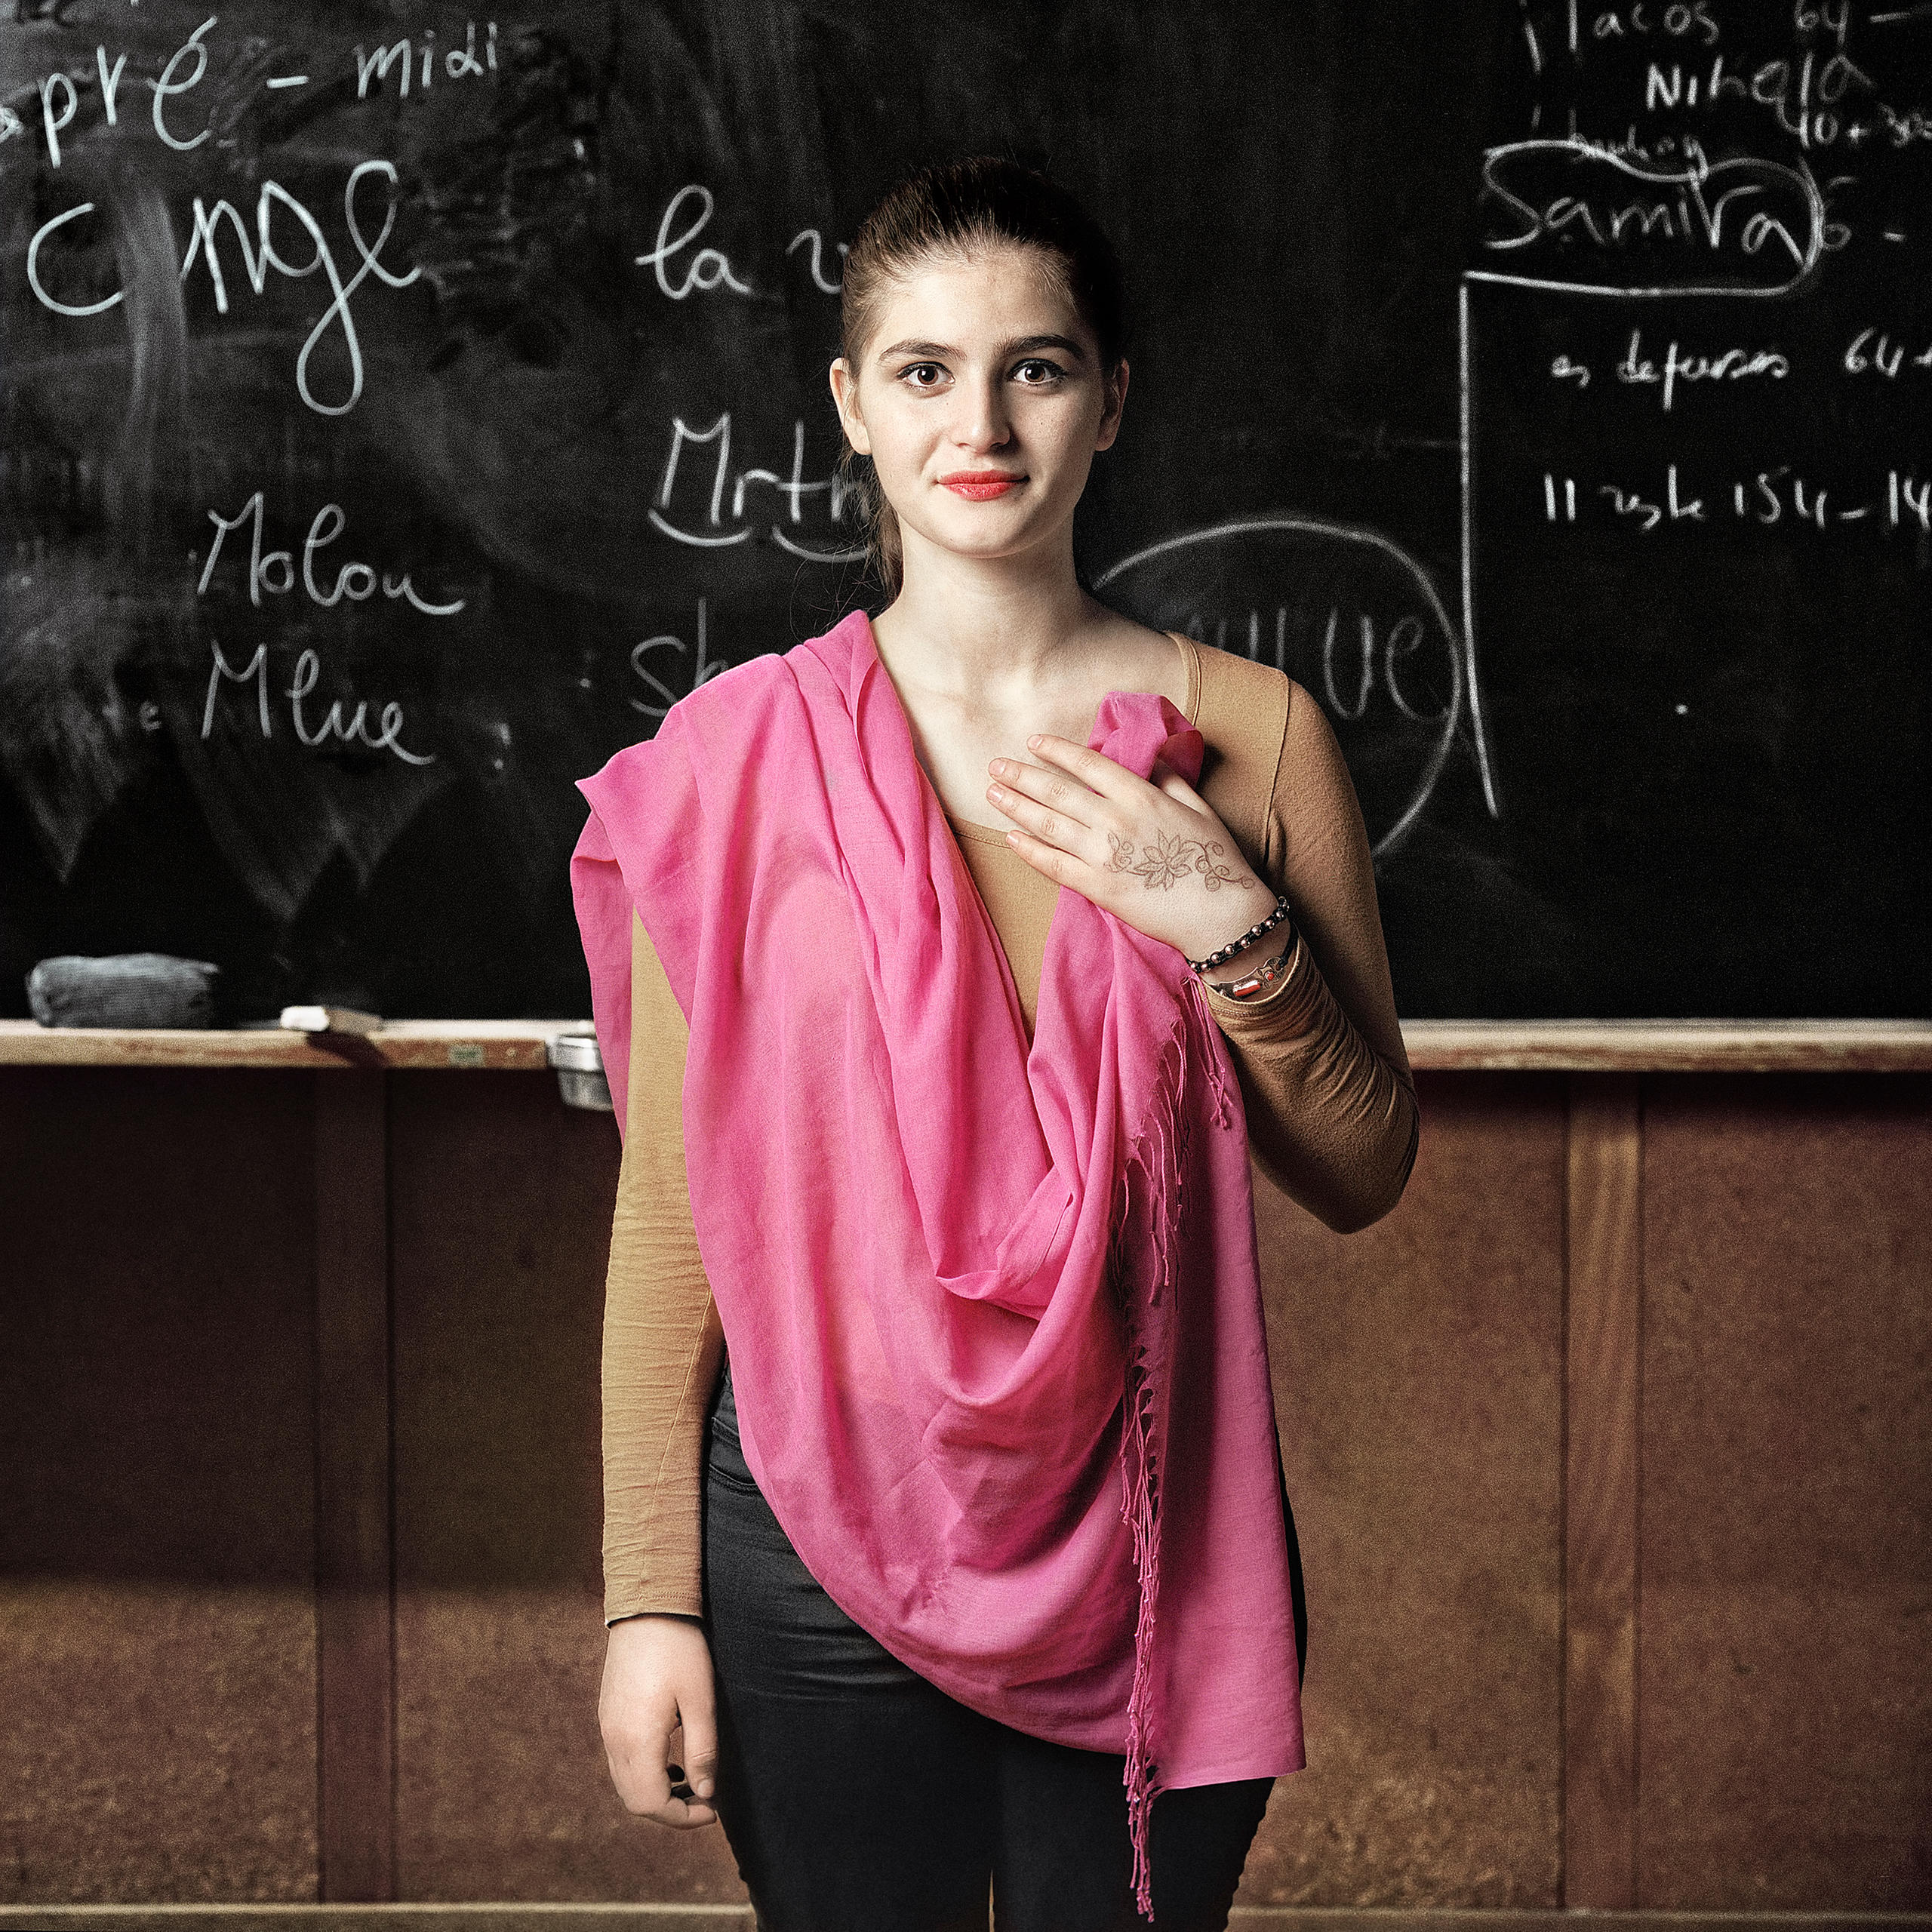 فتاة تقف أمام سبّورة سوداء وتحمل في يدها قماش وردي اللون